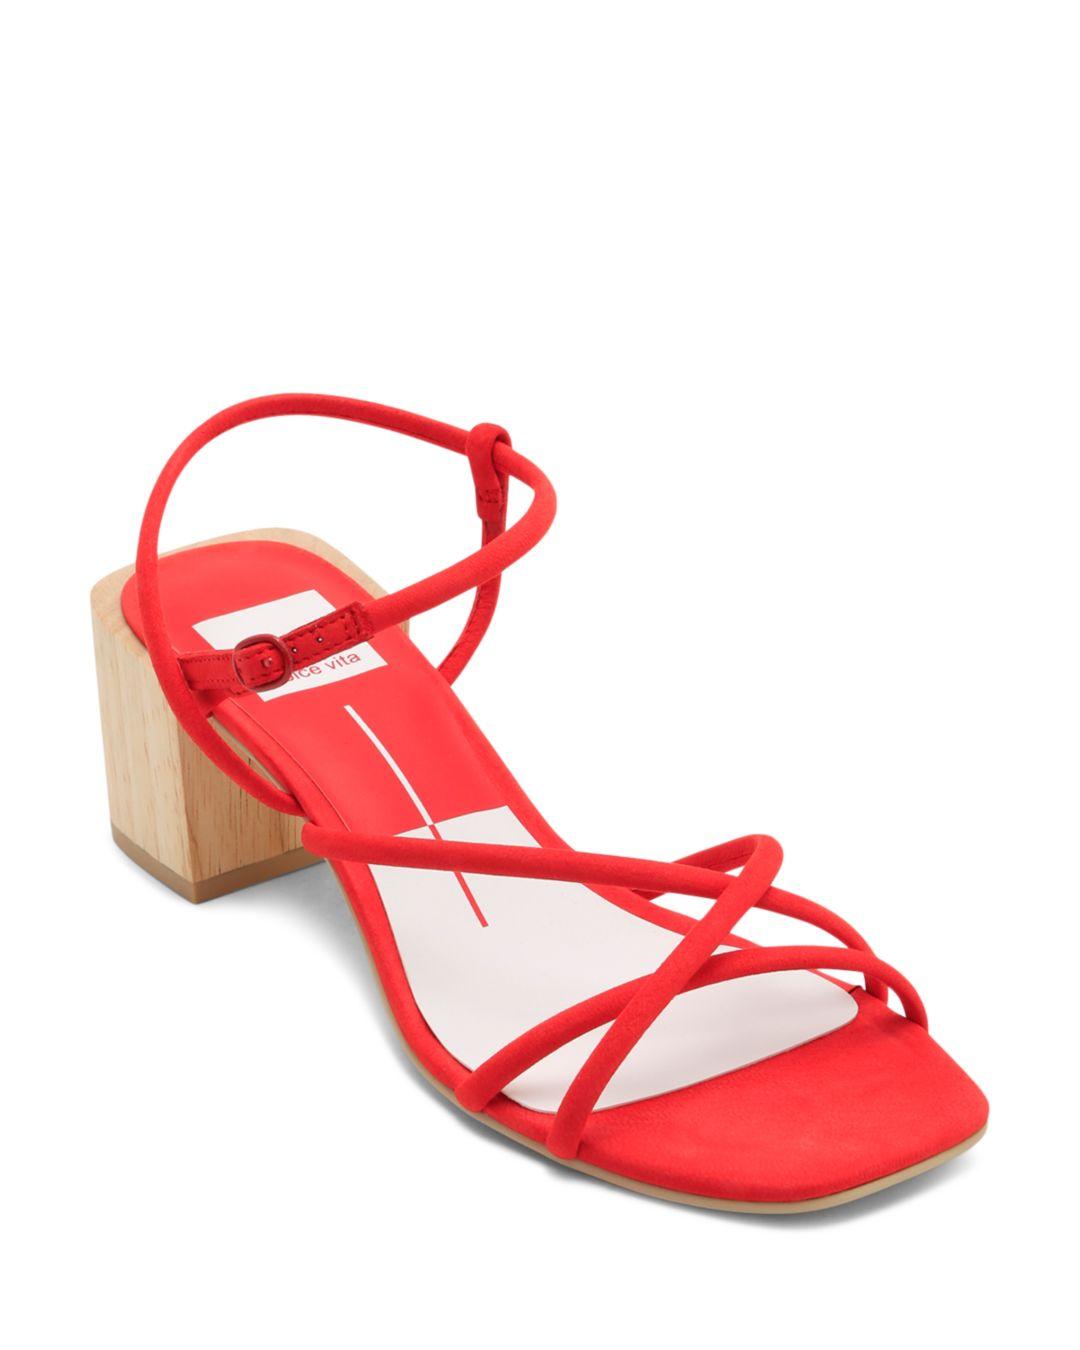 Lyst - Dolce Vita Women's Zayla Wooden Block Heel Sandals in Red